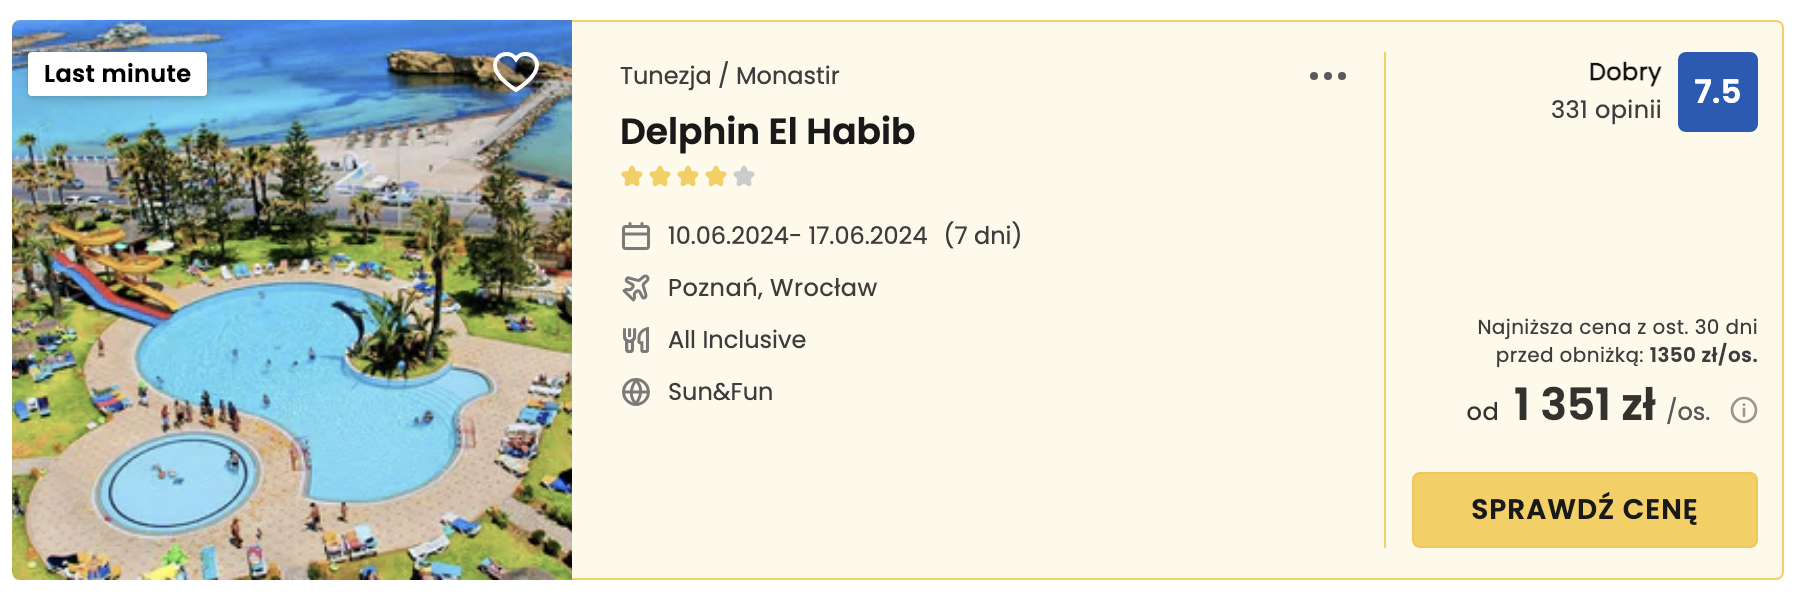 delphin el habib